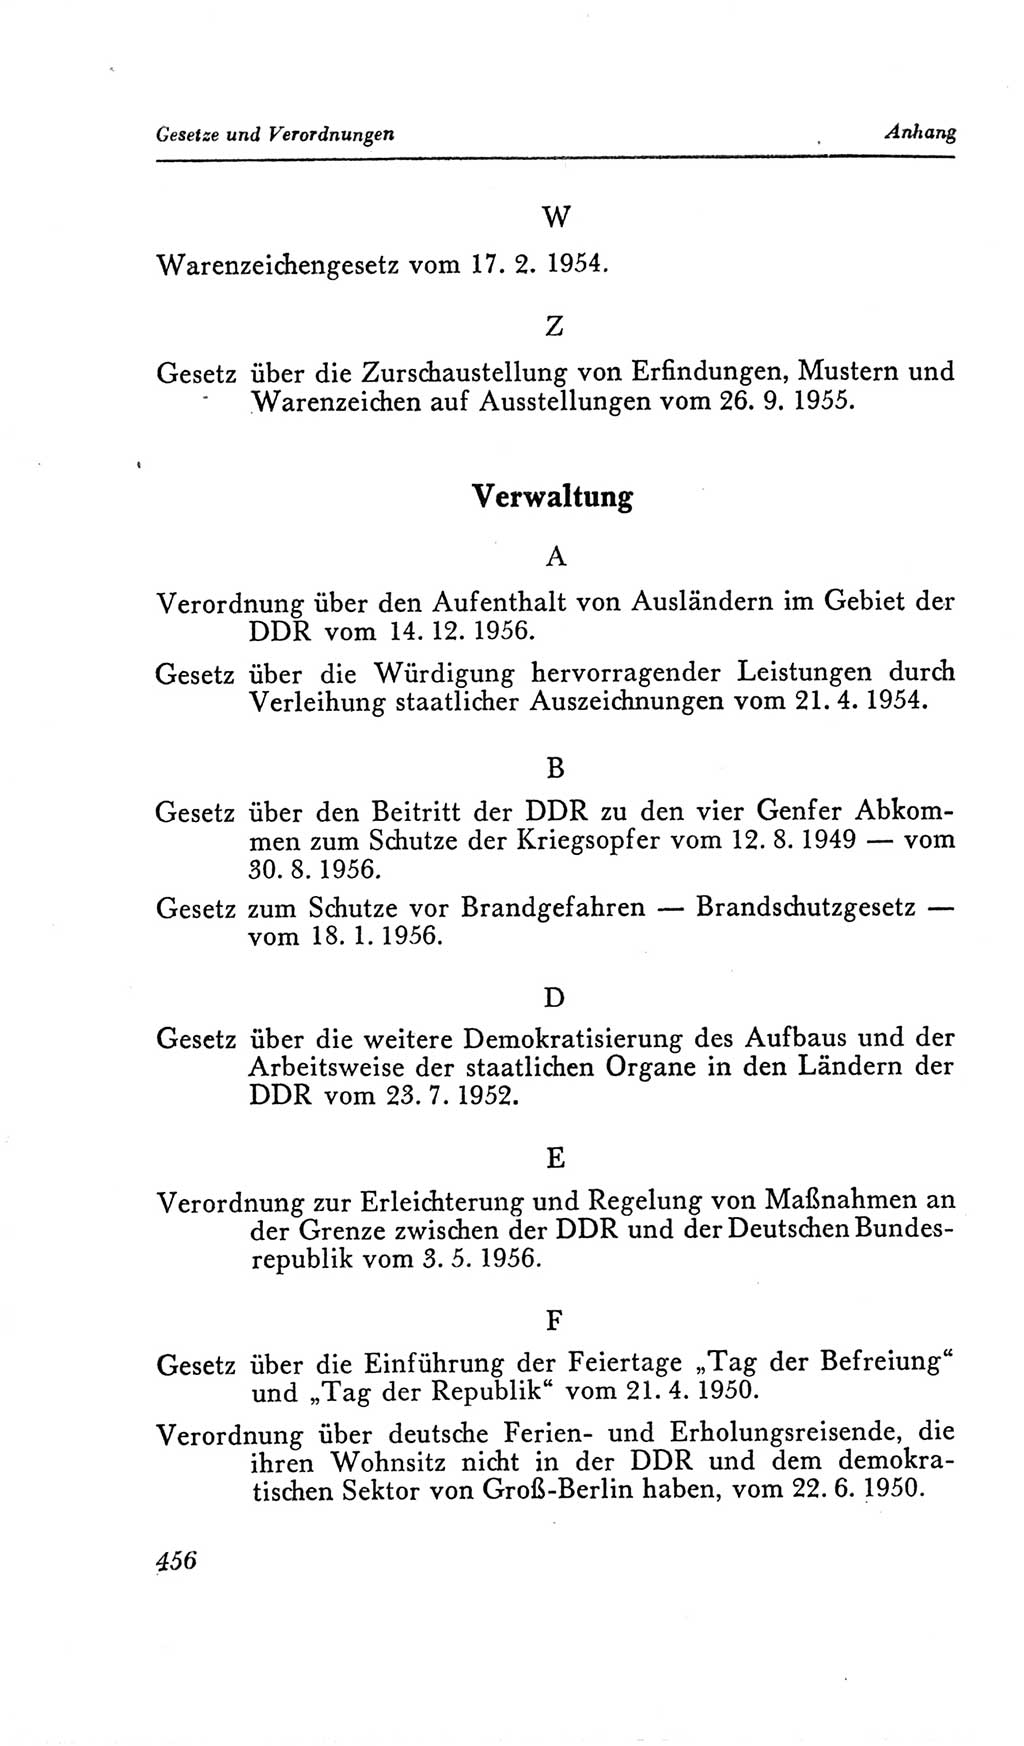 Handbuch der Volkskammer (VK) der Deutschen Demokratischen Republik (DDR), 2. Wahlperiode 1954-1958, Seite 456 (Hdb. VK. DDR, 2. WP. 1954-1958, S. 456)